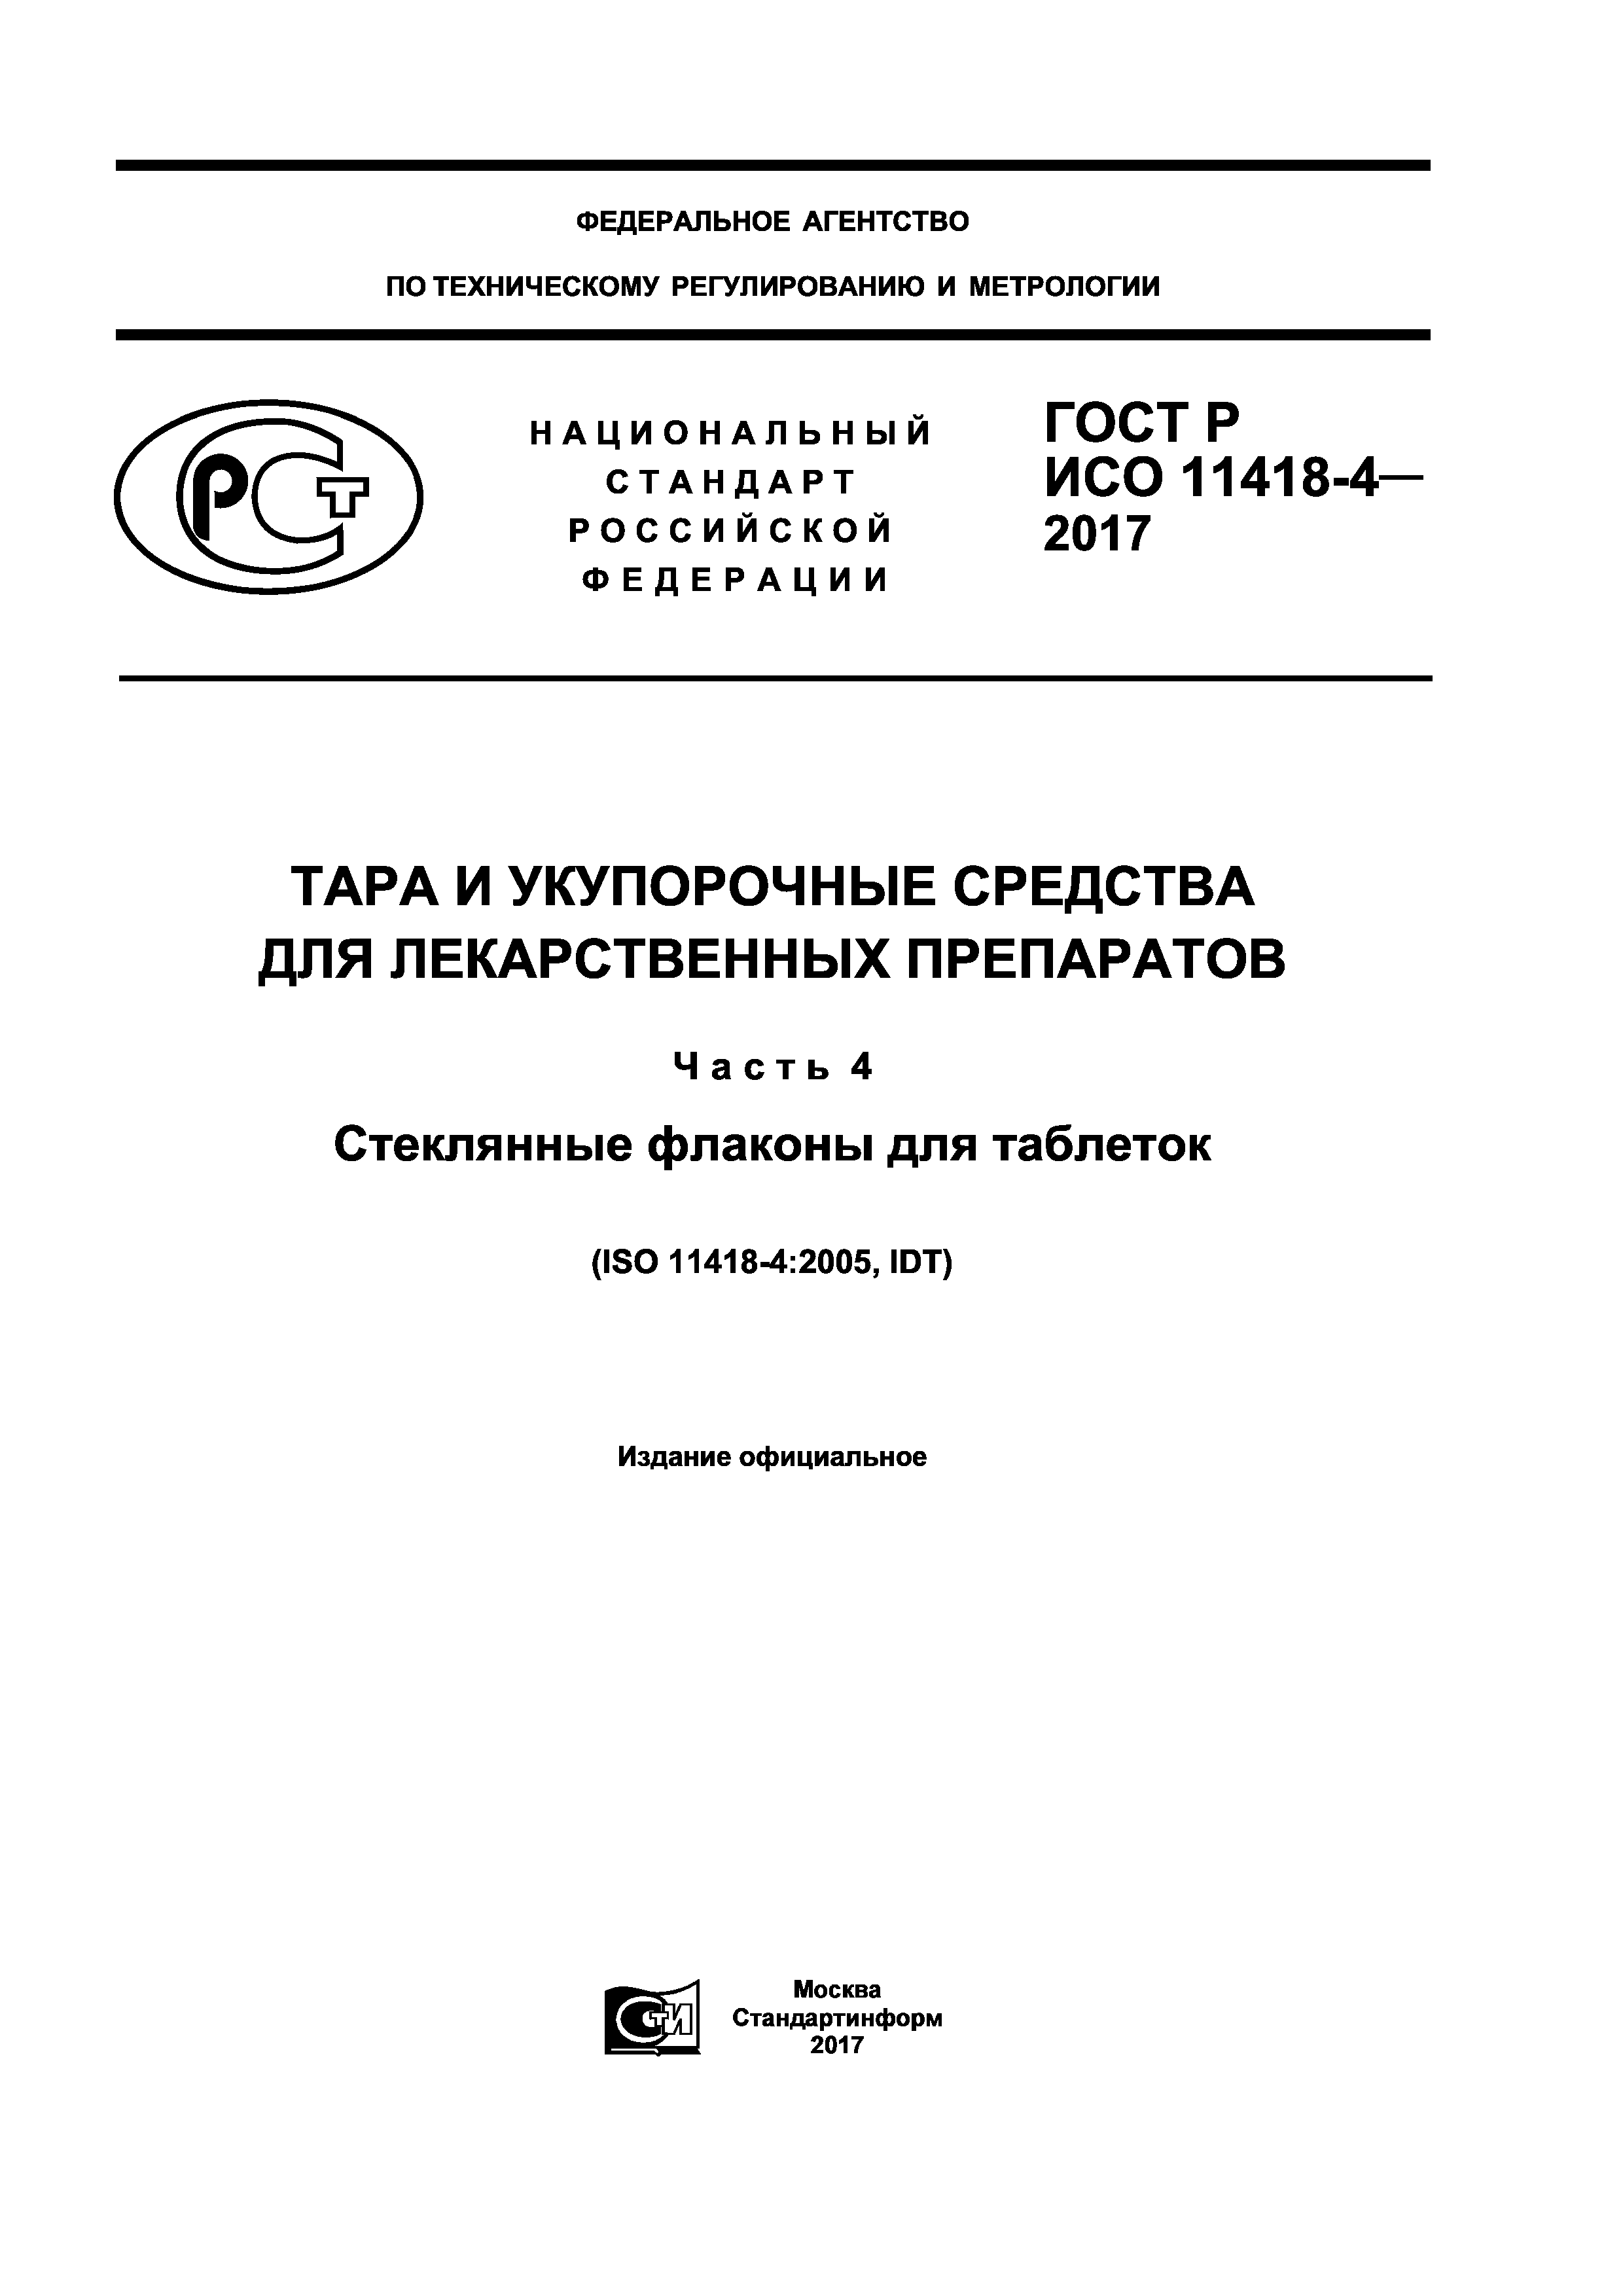 ГОСТ Р ИСО 11418-4-2017